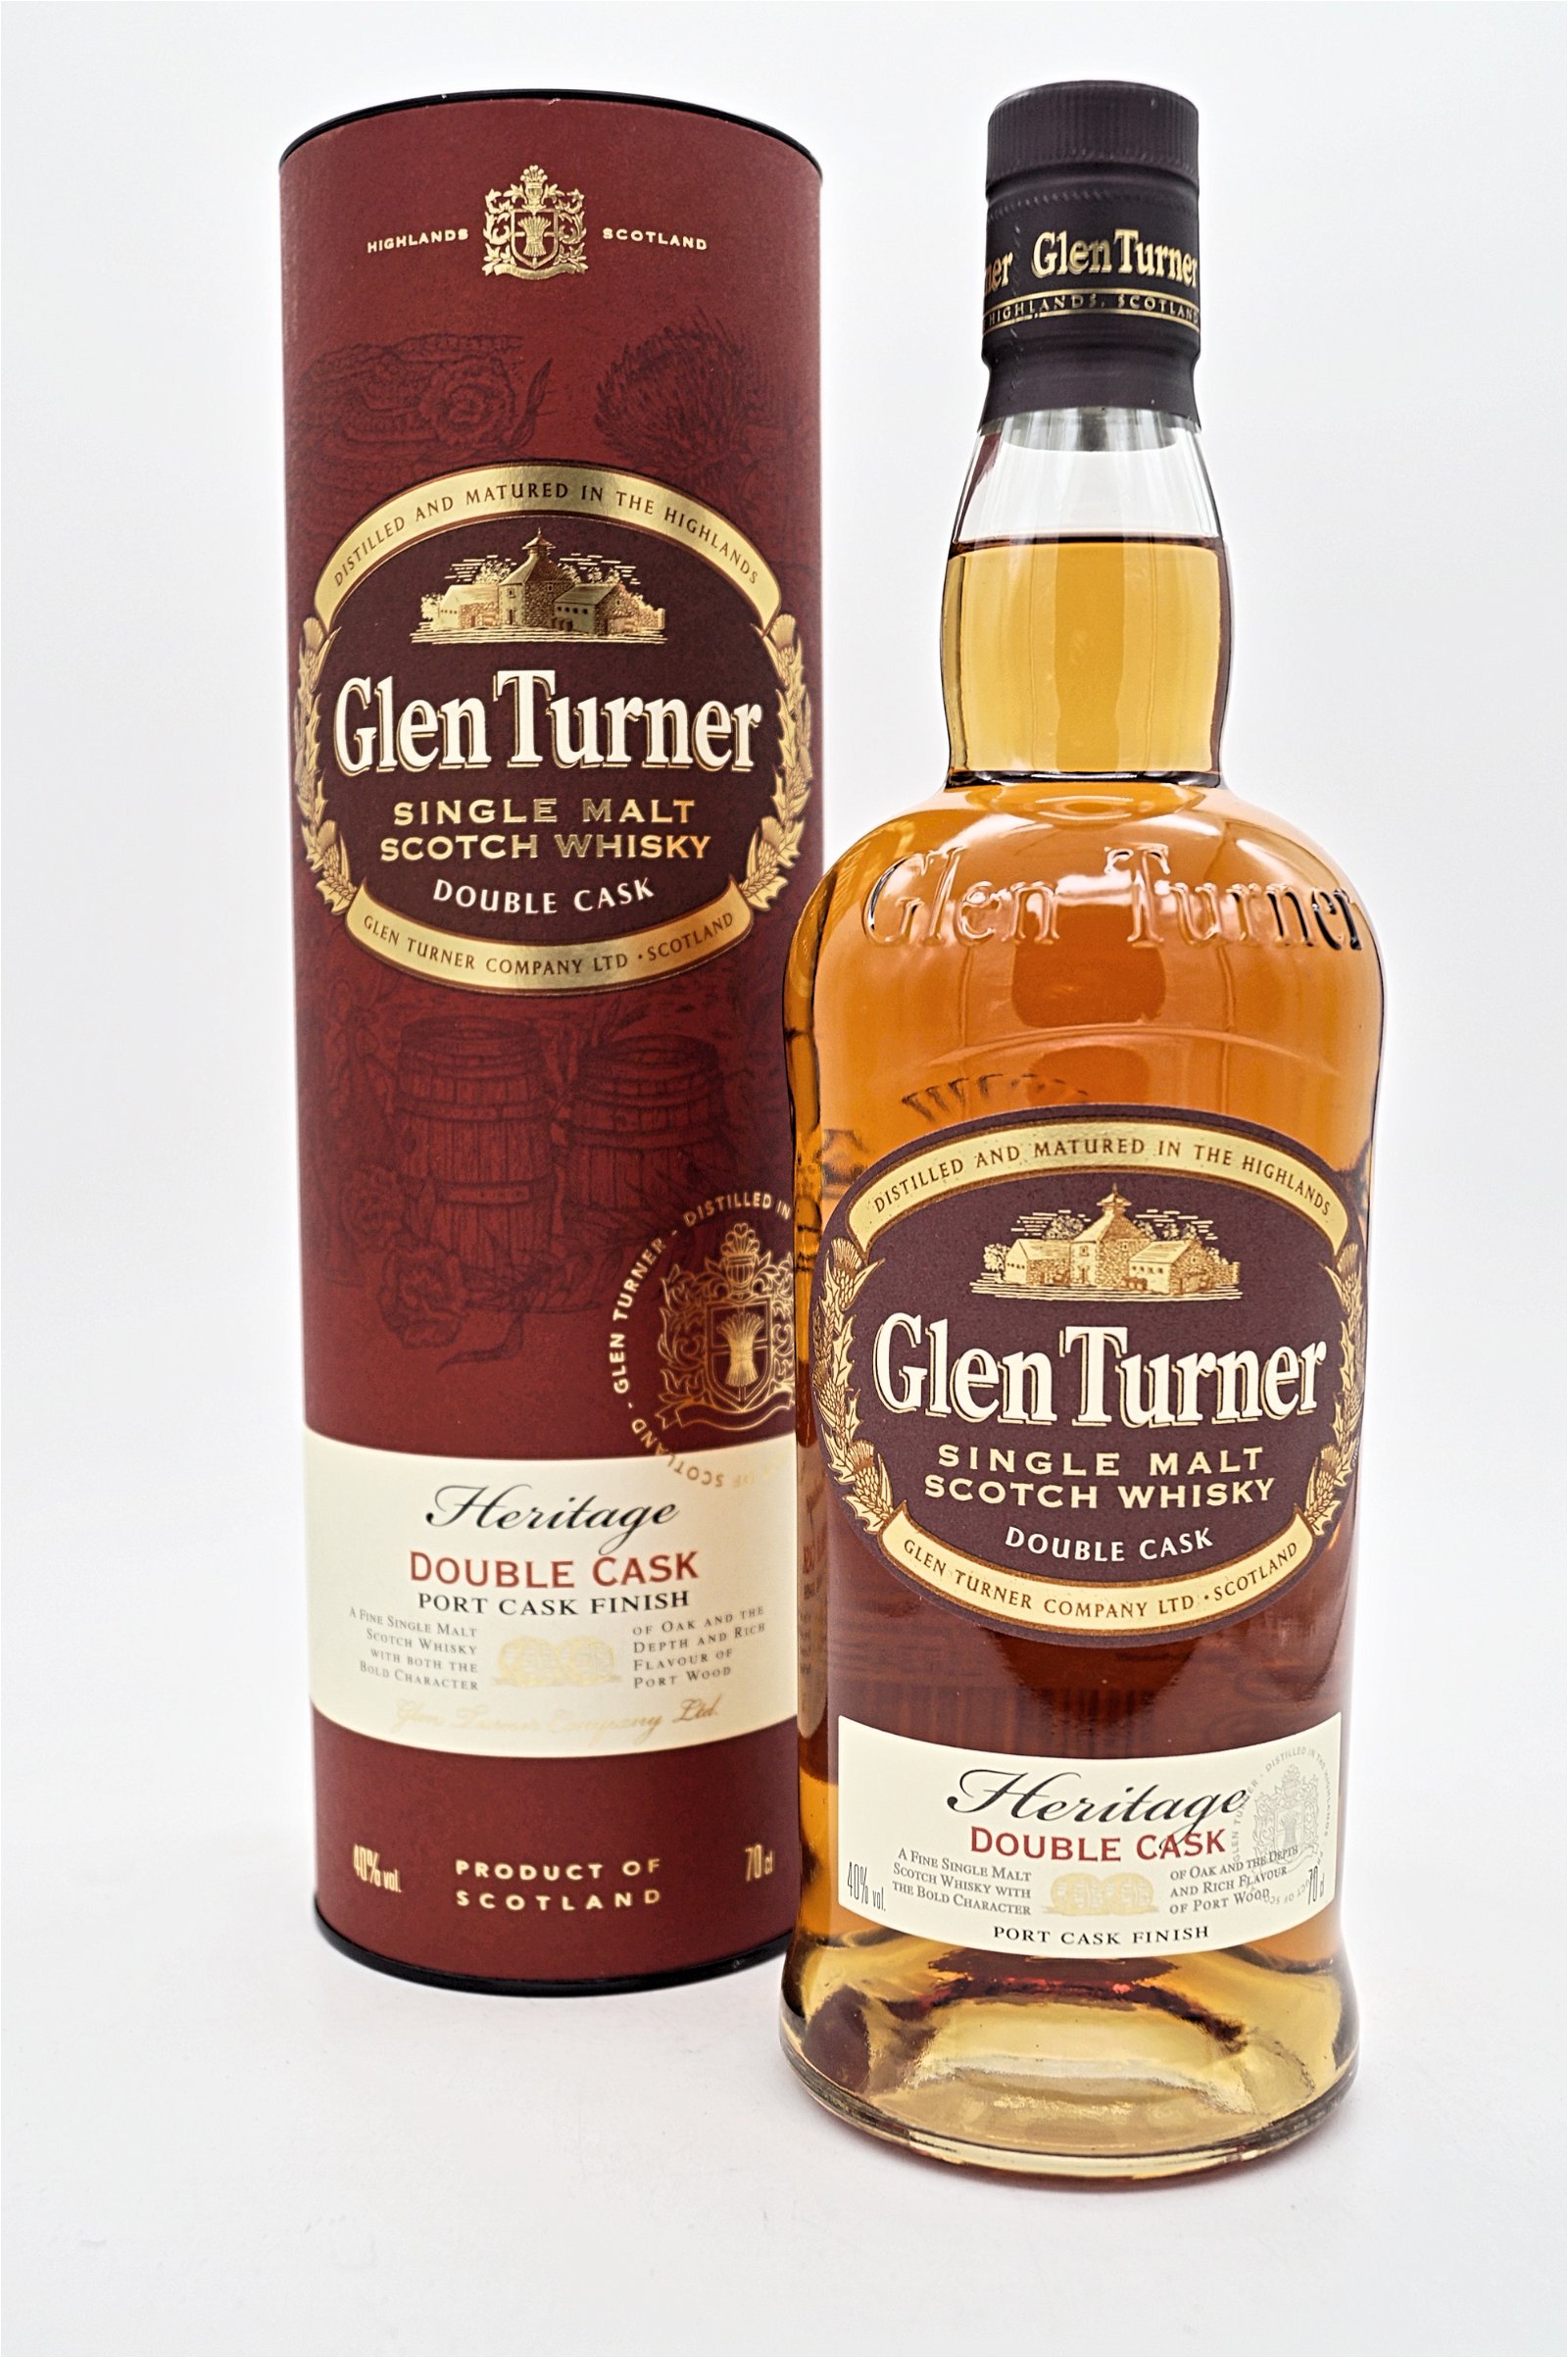 Glen Turner Heritage Double Cask Port Cask Finish Single Malt Scotch Whisky